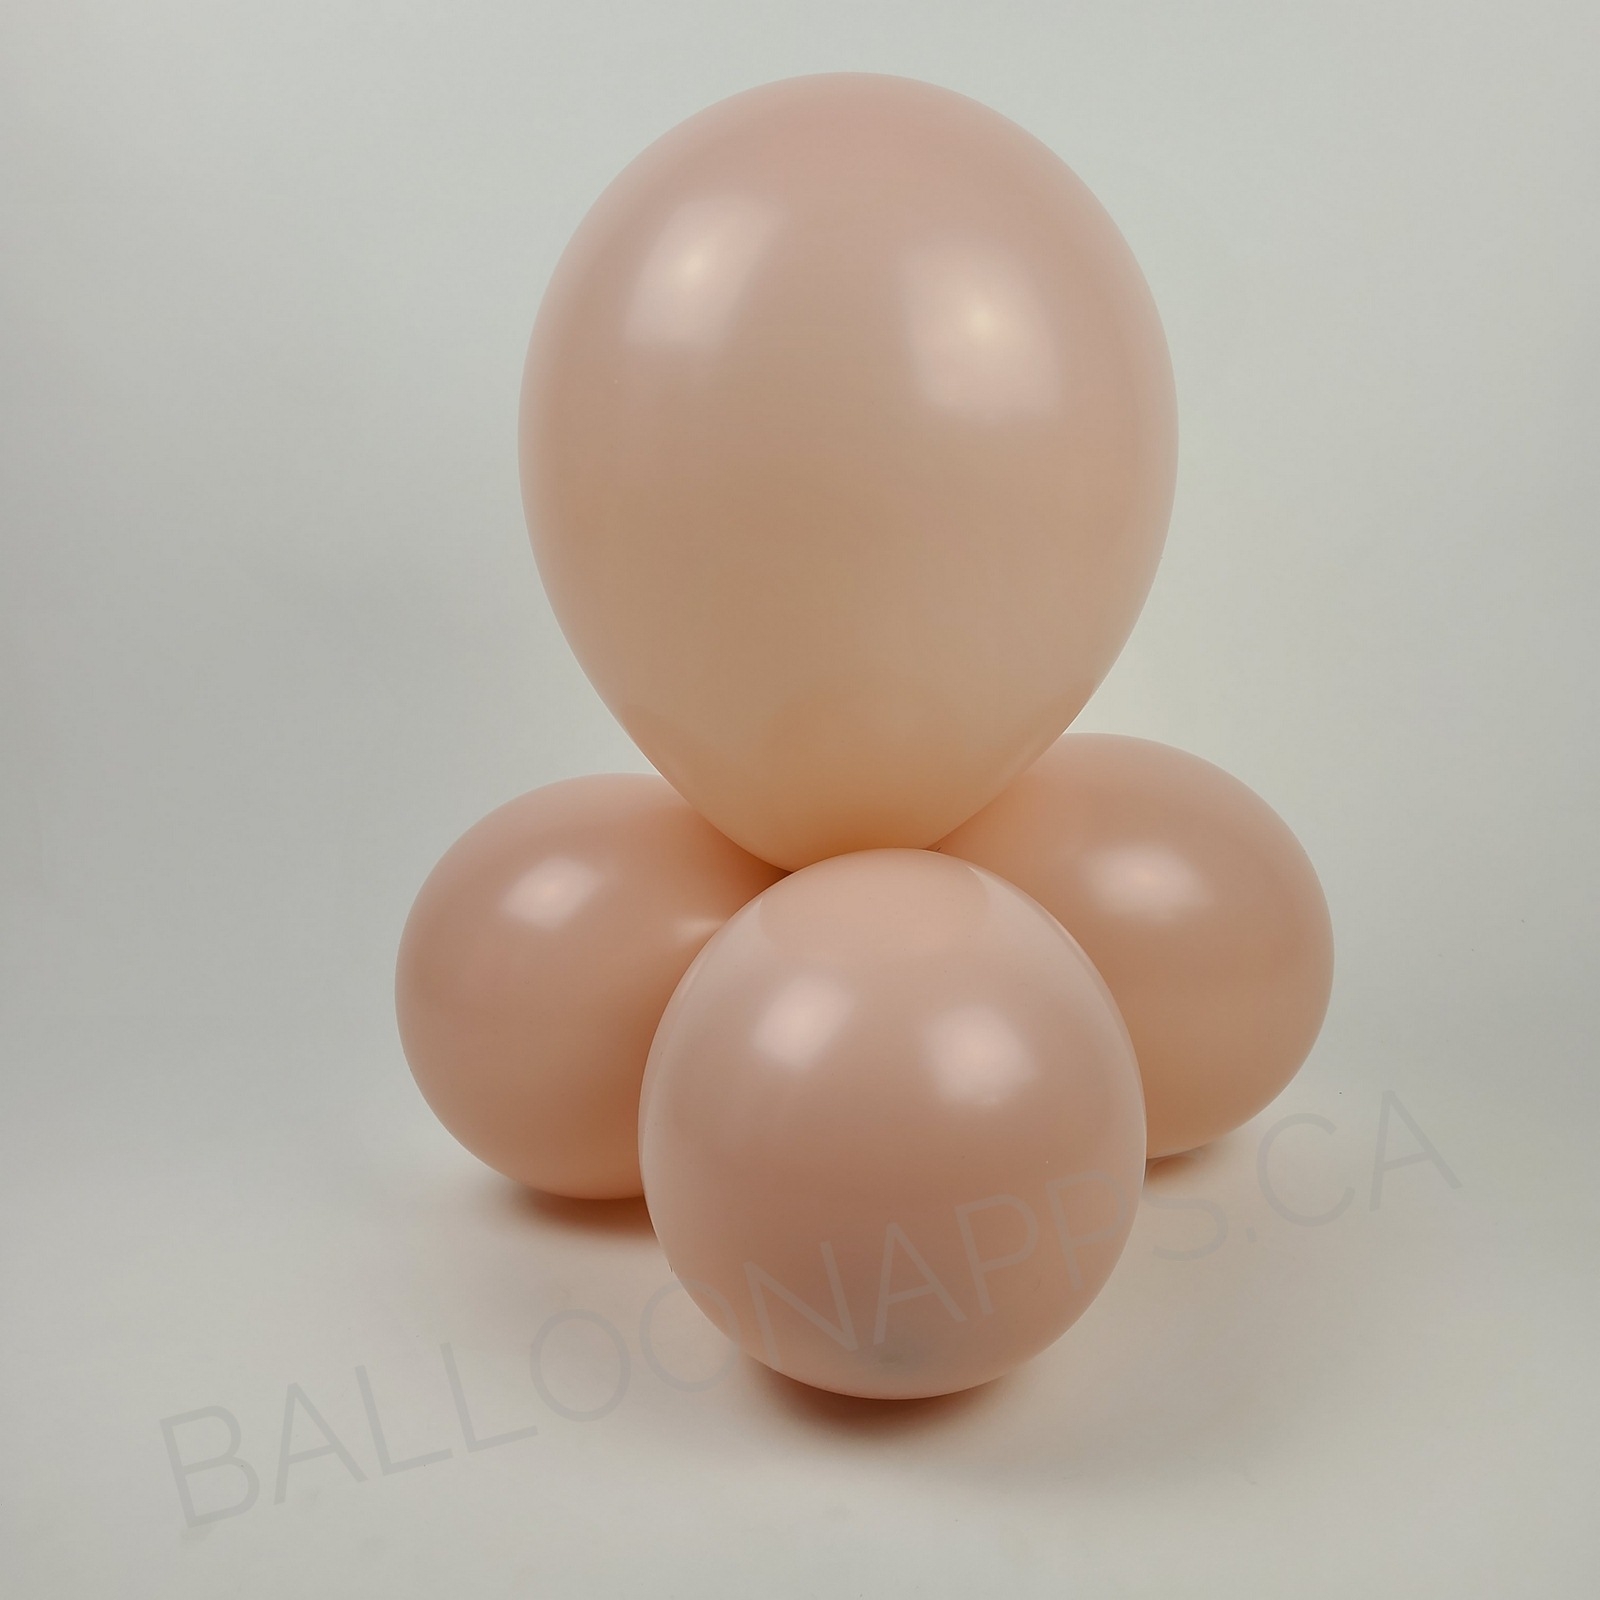 balloon texture TUFTEX (1) 24